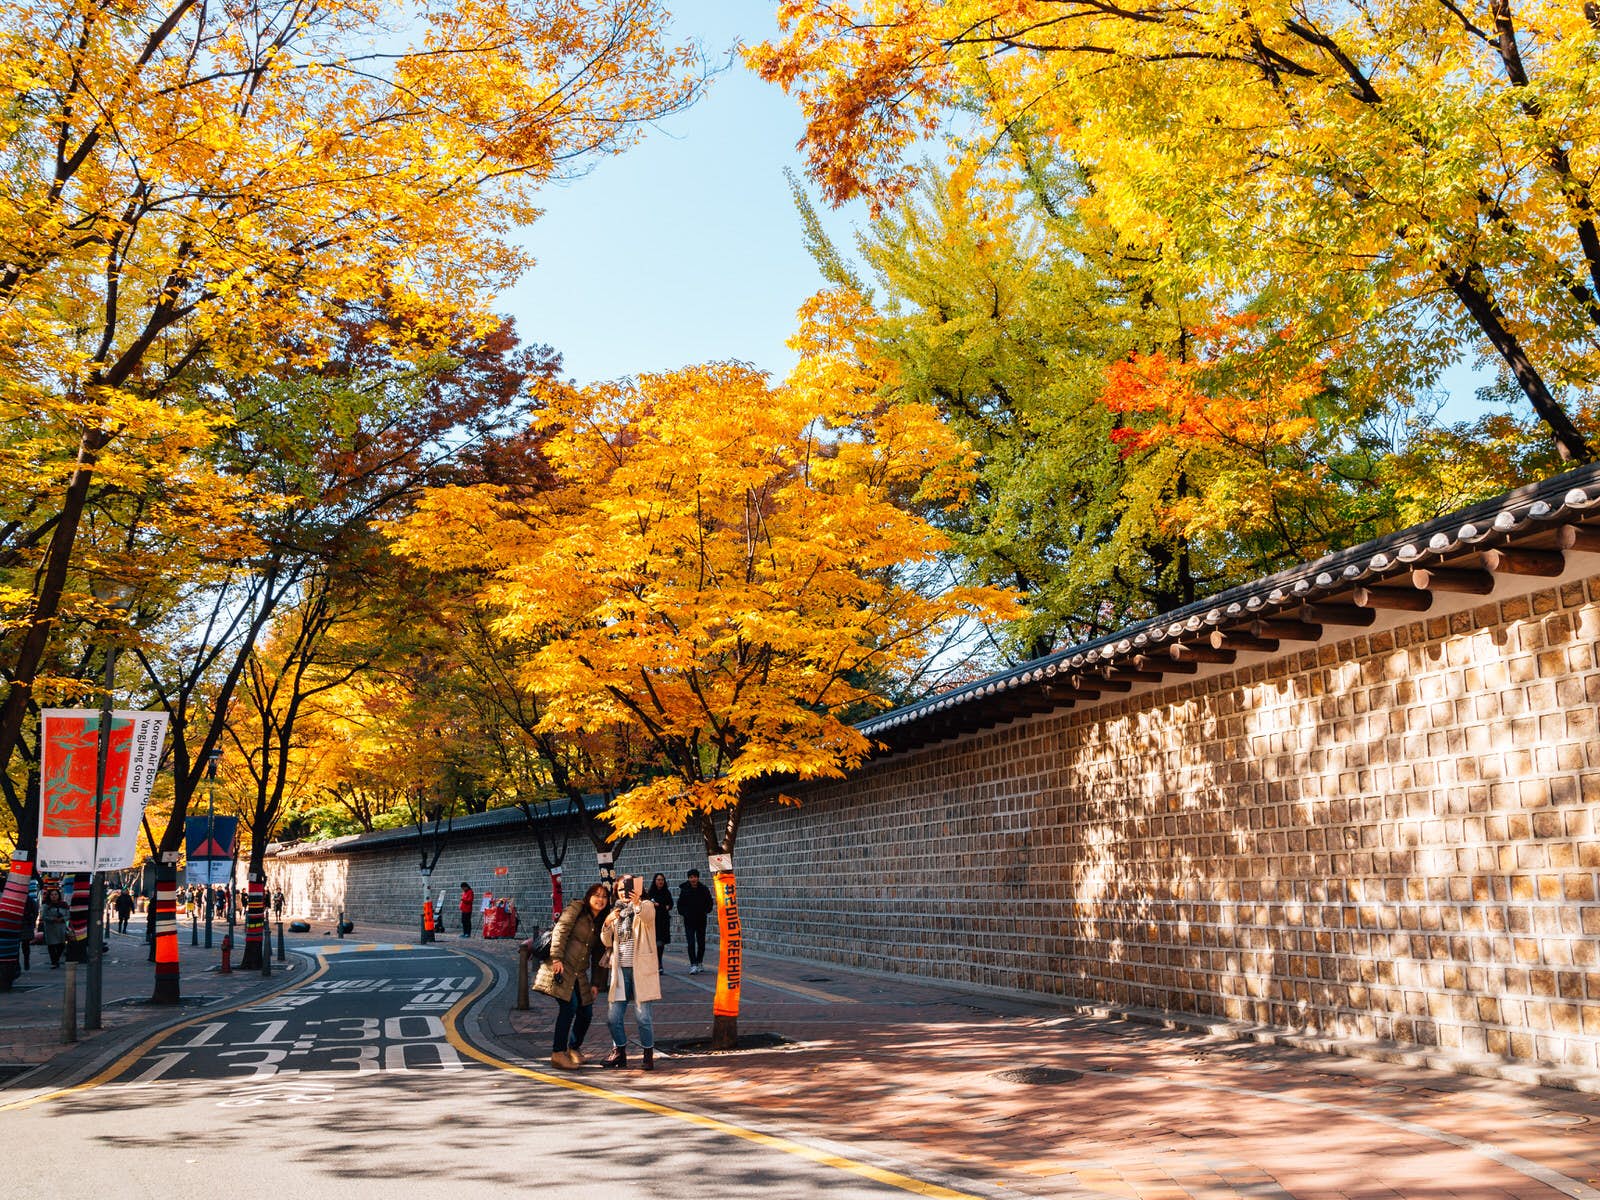 Seoul's best autumn walks